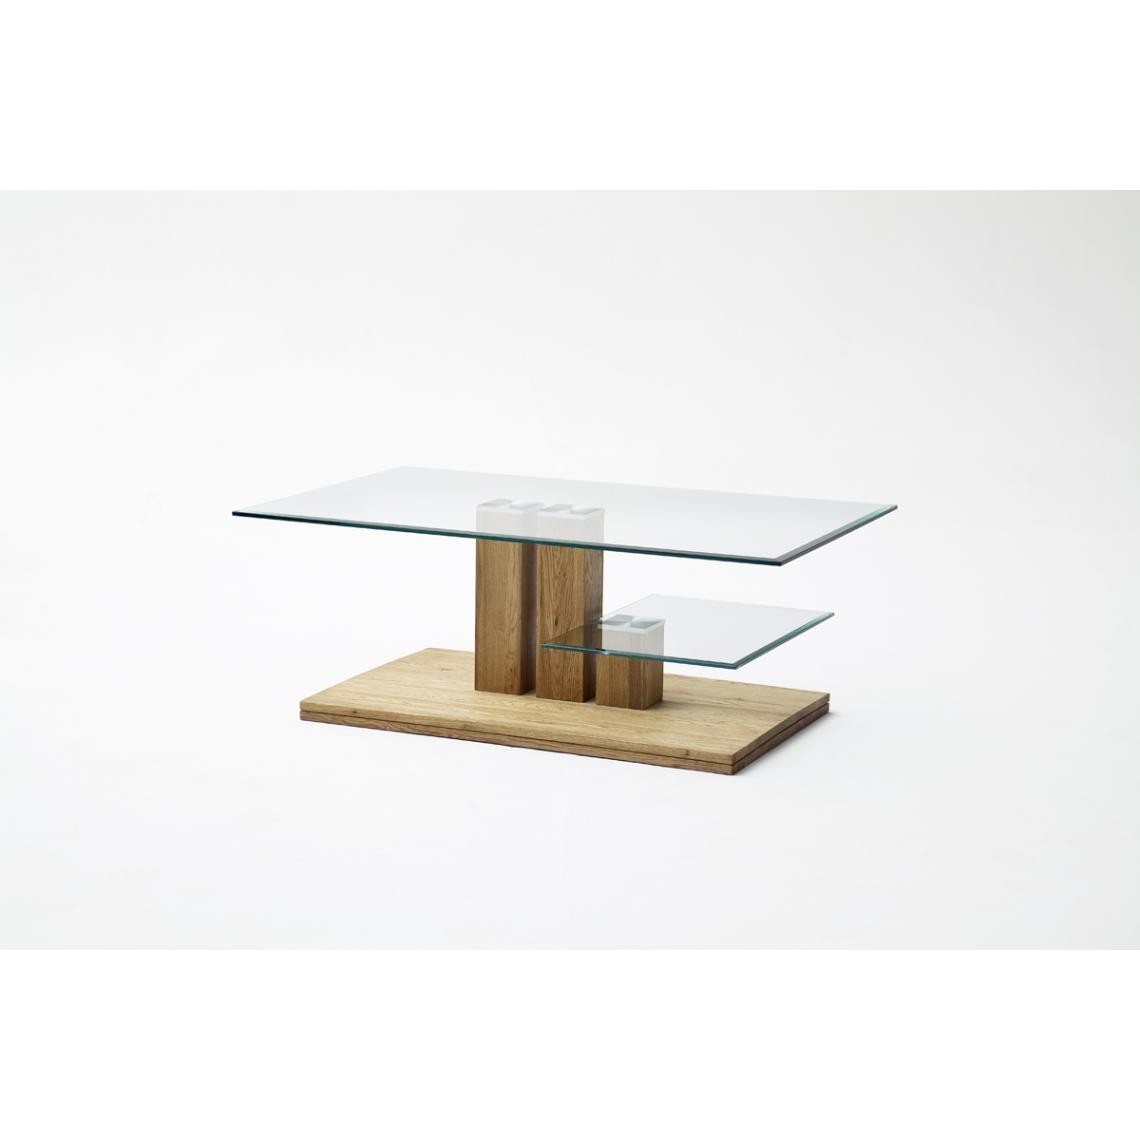 Pegane - Table basse en chêne noueux et verre - L110 x L40 x H70 cm - Tables basses